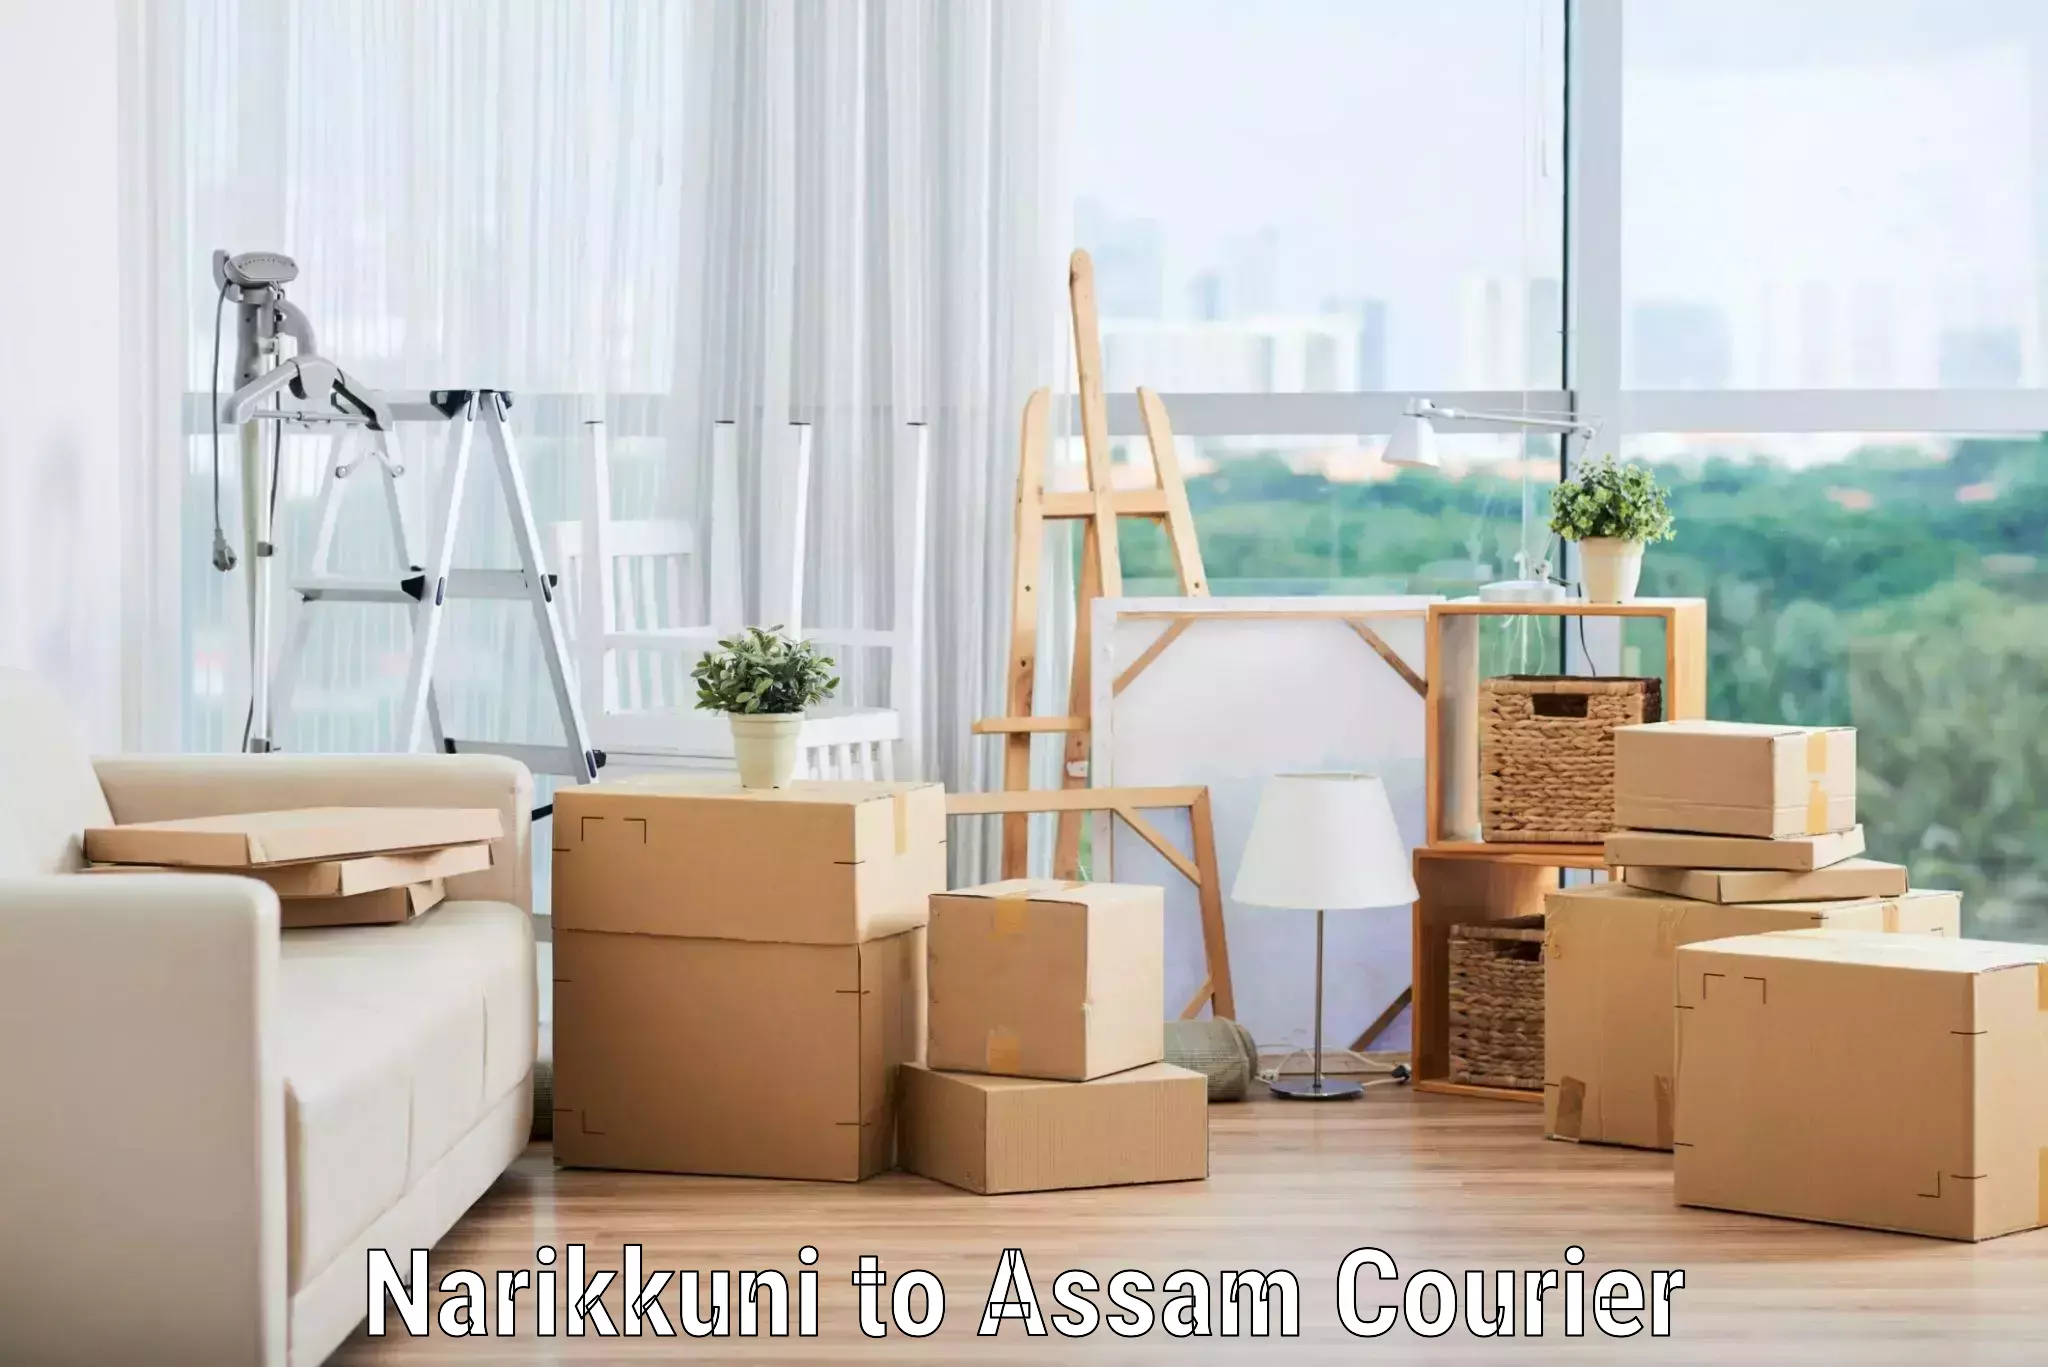 Furniture transport specialists Narikkuni to Assam